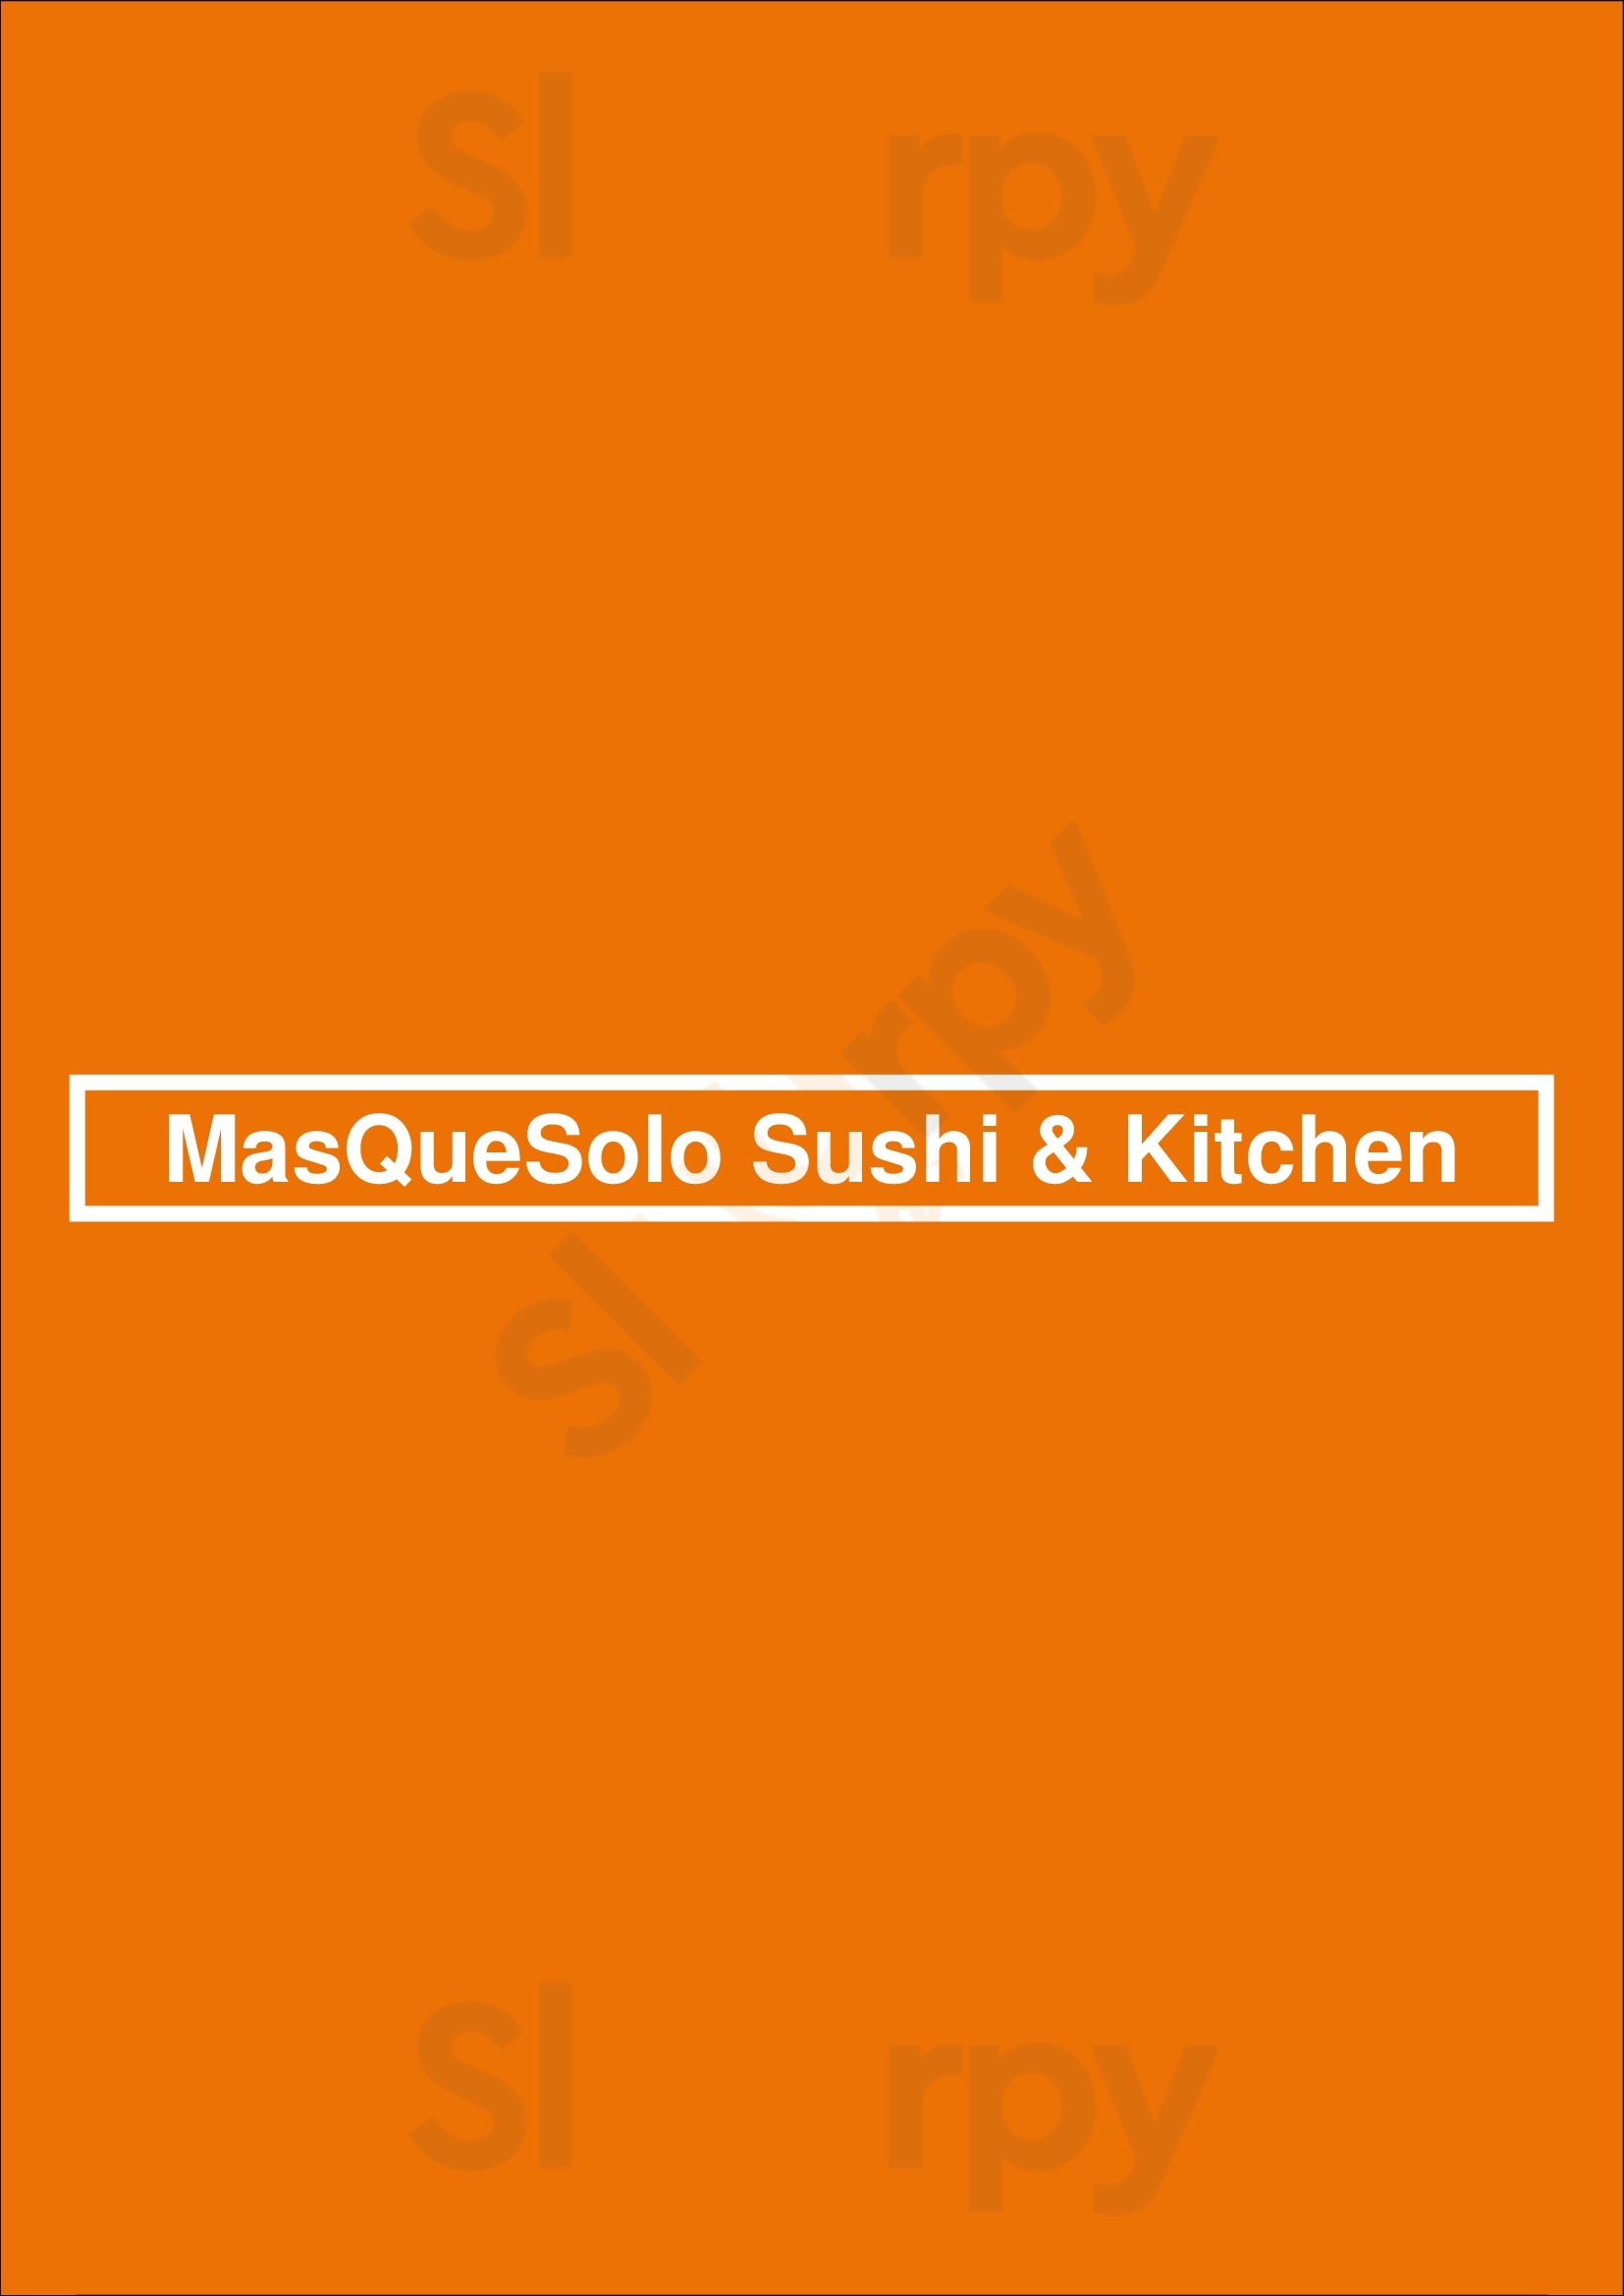 Masquesolo Sushi & Kitchen Surrey Menu - 1